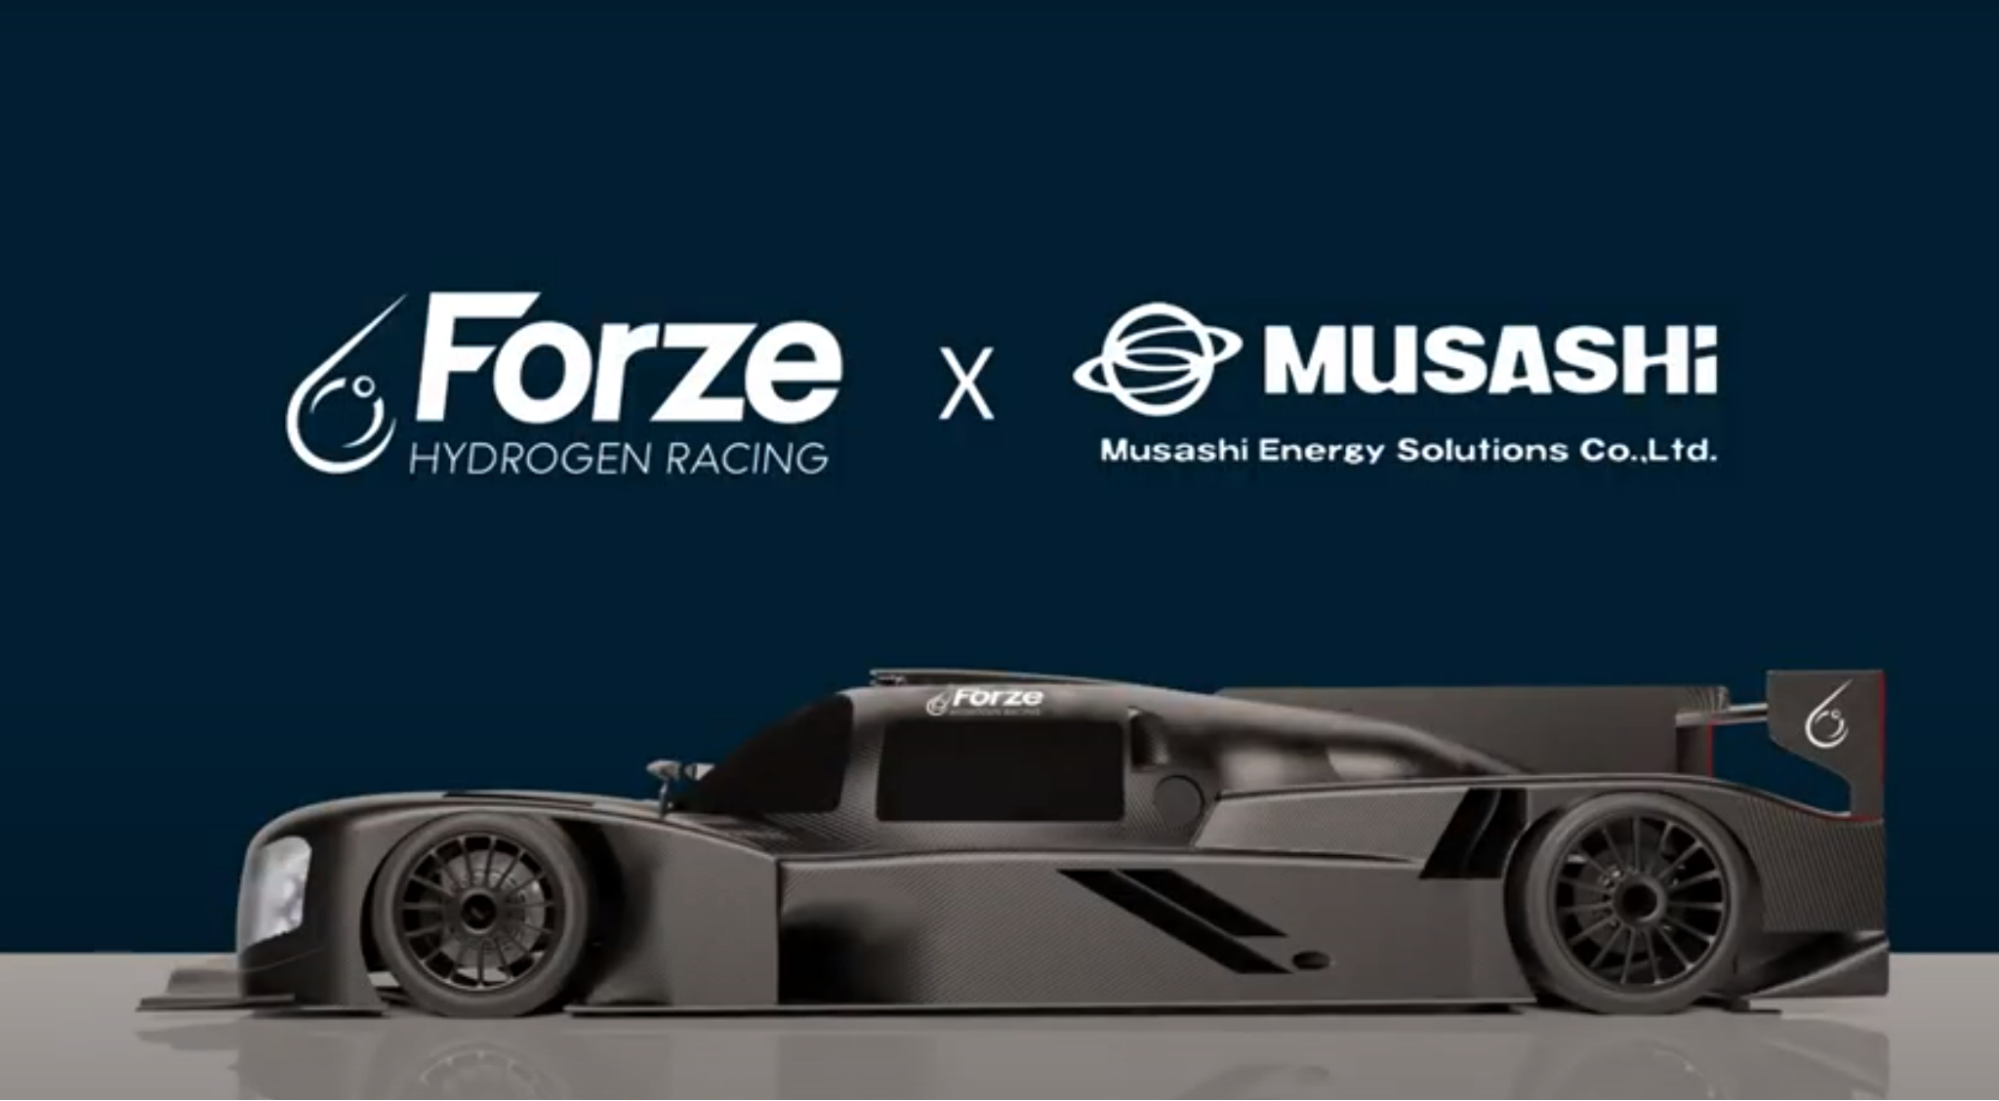 リチウムイオンキャパシタを搭載する燃料電池レーシングカーの「Forze IX」のインタビュー動画が公開されました。（動画あり）